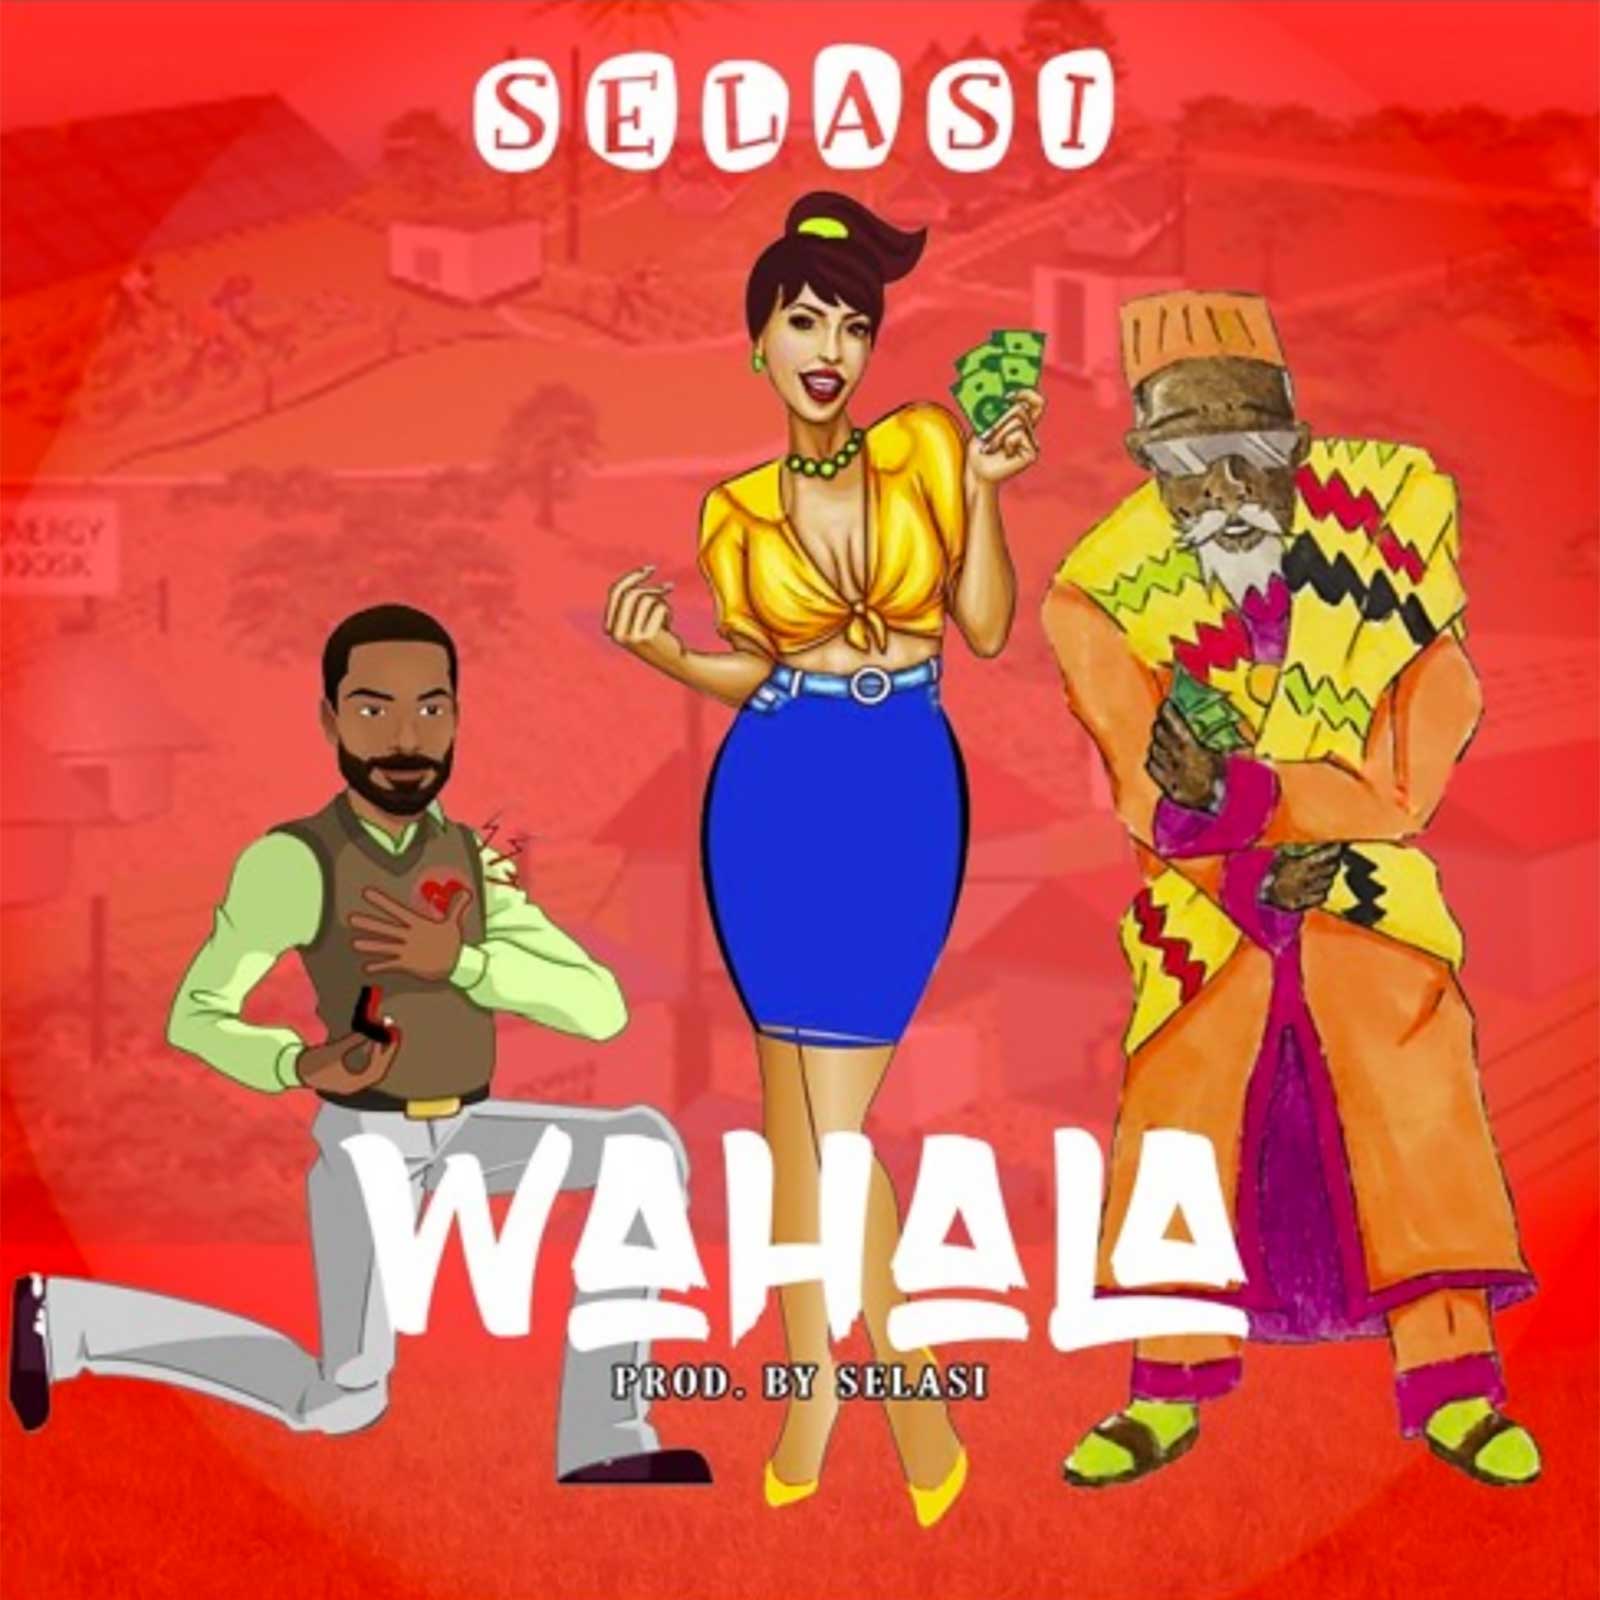 Wahala by Selasi